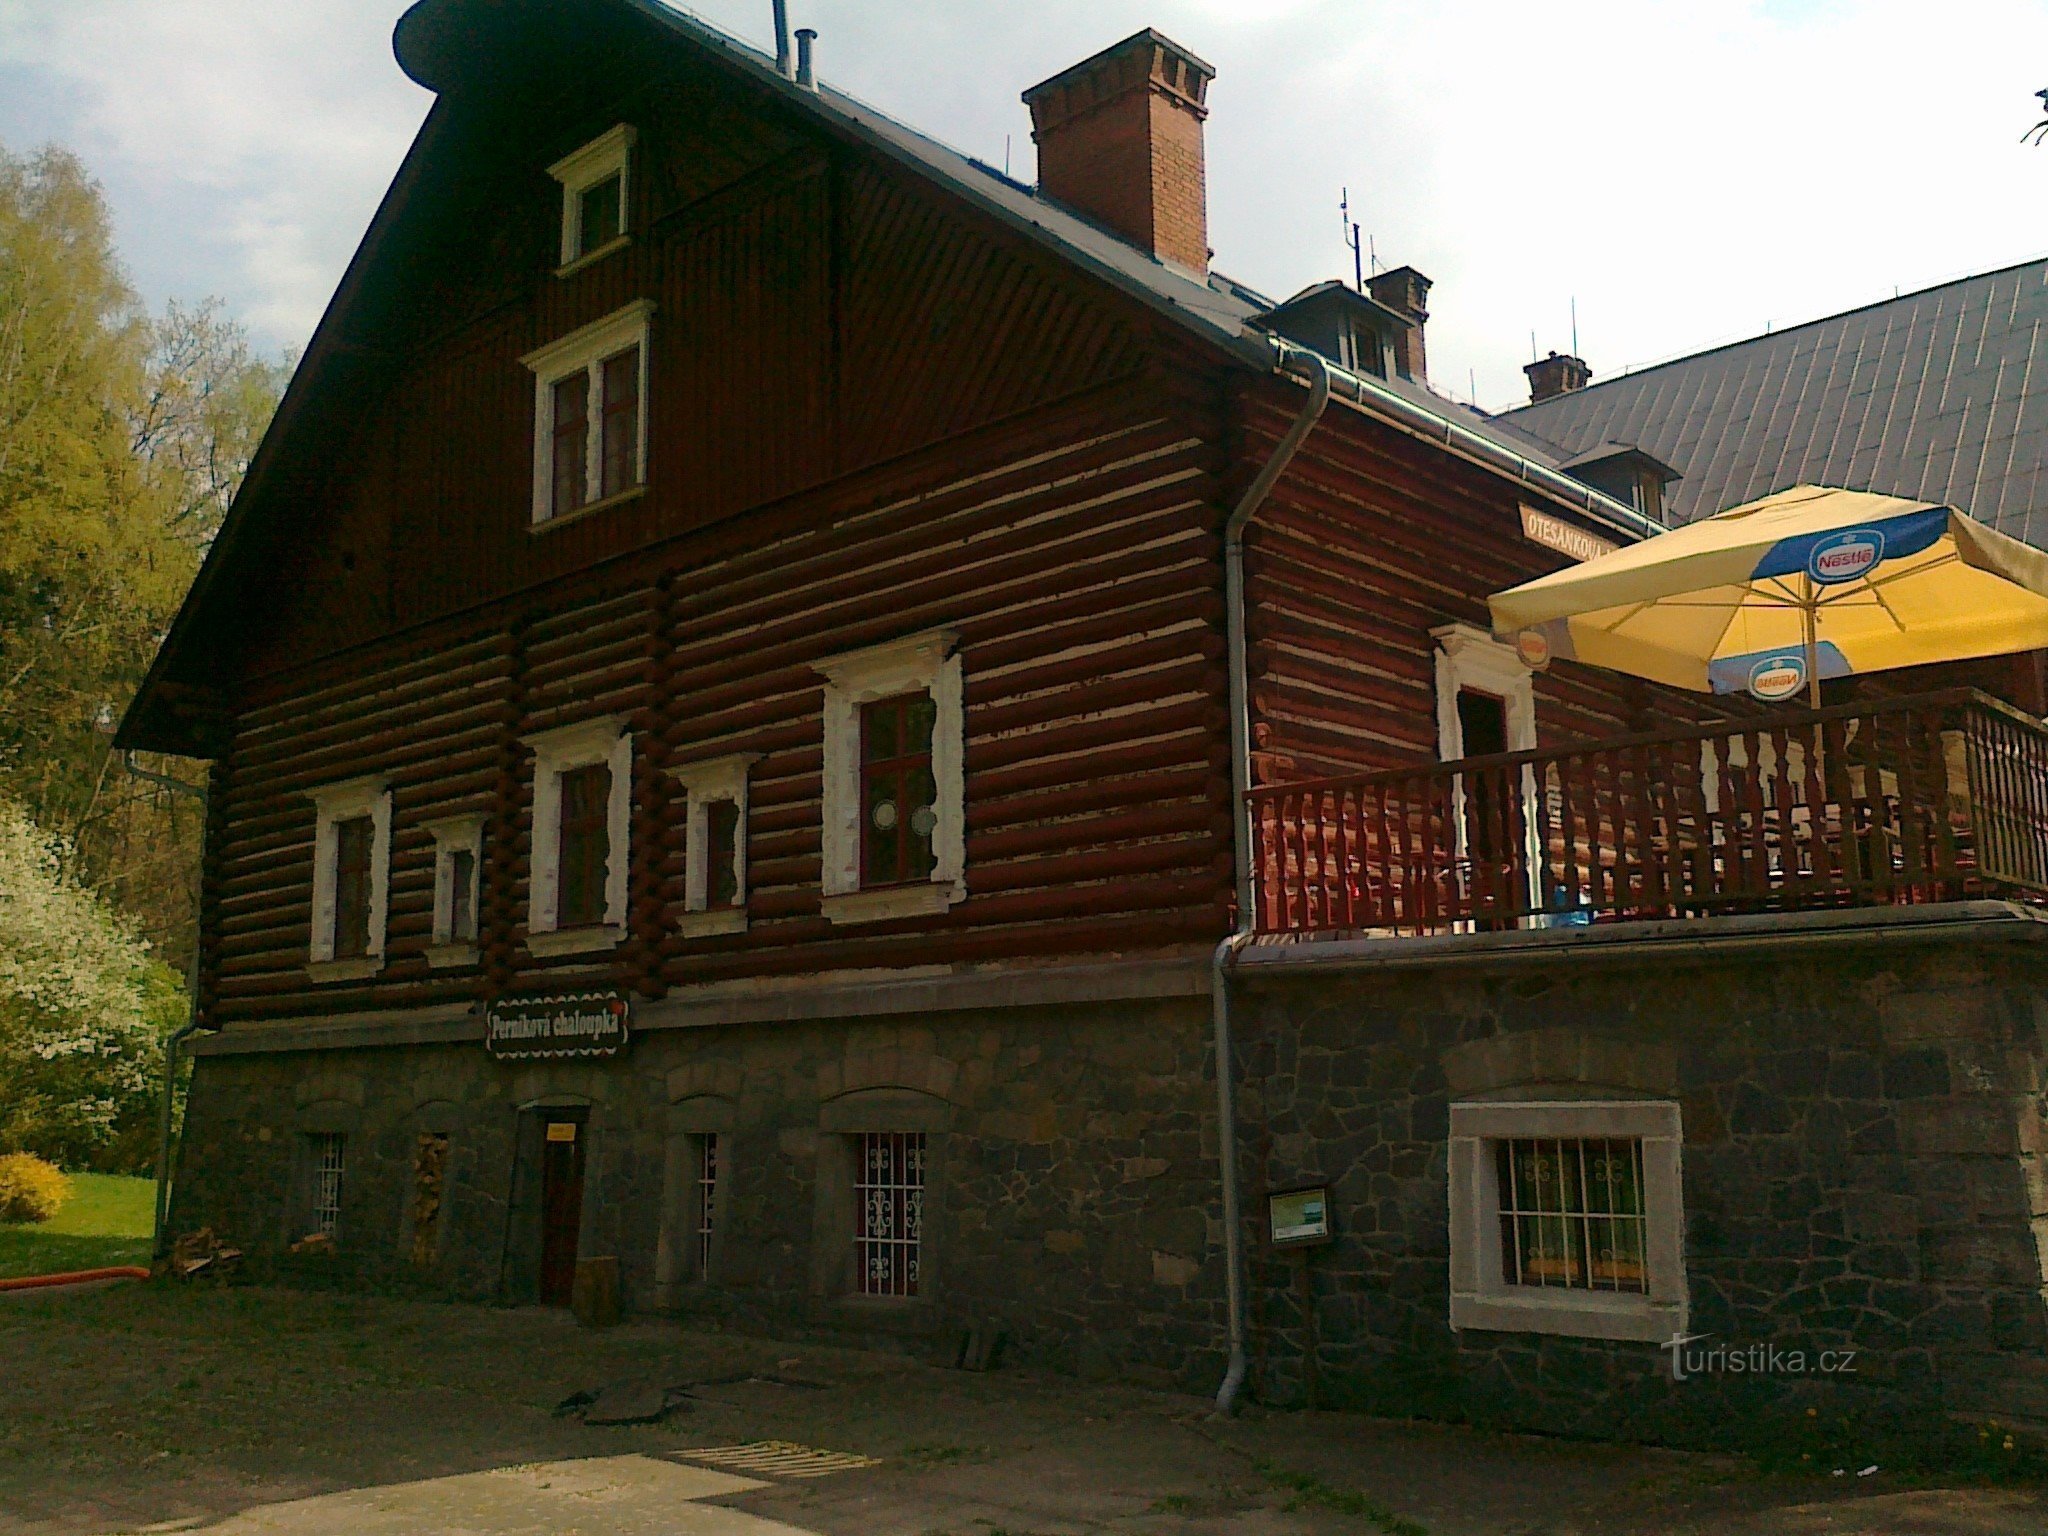 Casa di marzapane - Museo del pan di zenzero e delle fiabe